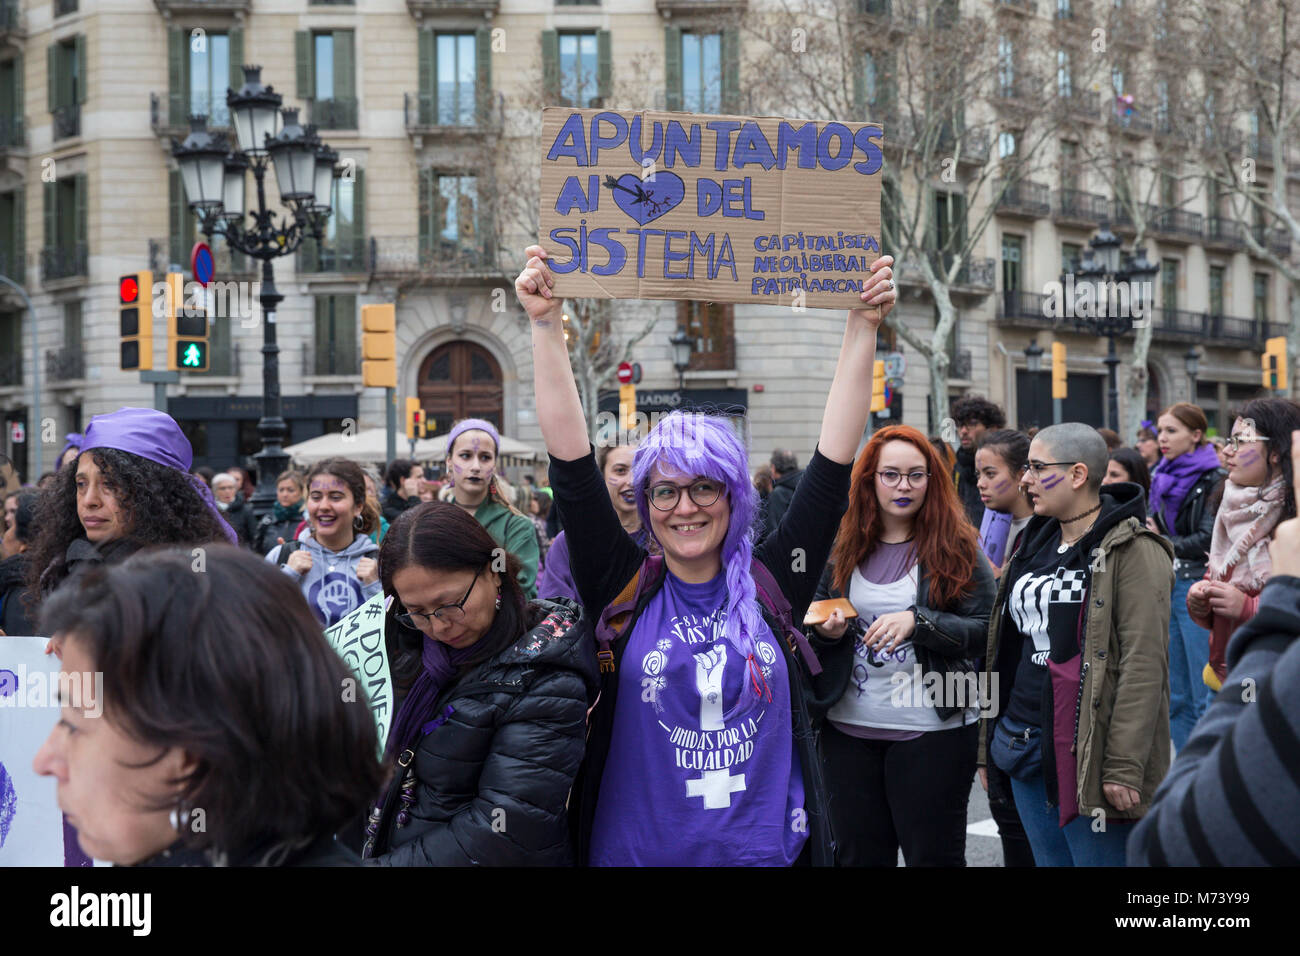 Barcellona, Spagna. 08 Mar, 2018. Dimostrazione femminista tenutosi nella città di Barcellona La rivendicazione di parità di diritti per le donne che lavorano su Marzo 8, 2018 in Paseo de Gracia di Barcellona. Credito: Gtres Información más Comuniación on line, S.L./Alamy Live News Foto Stock